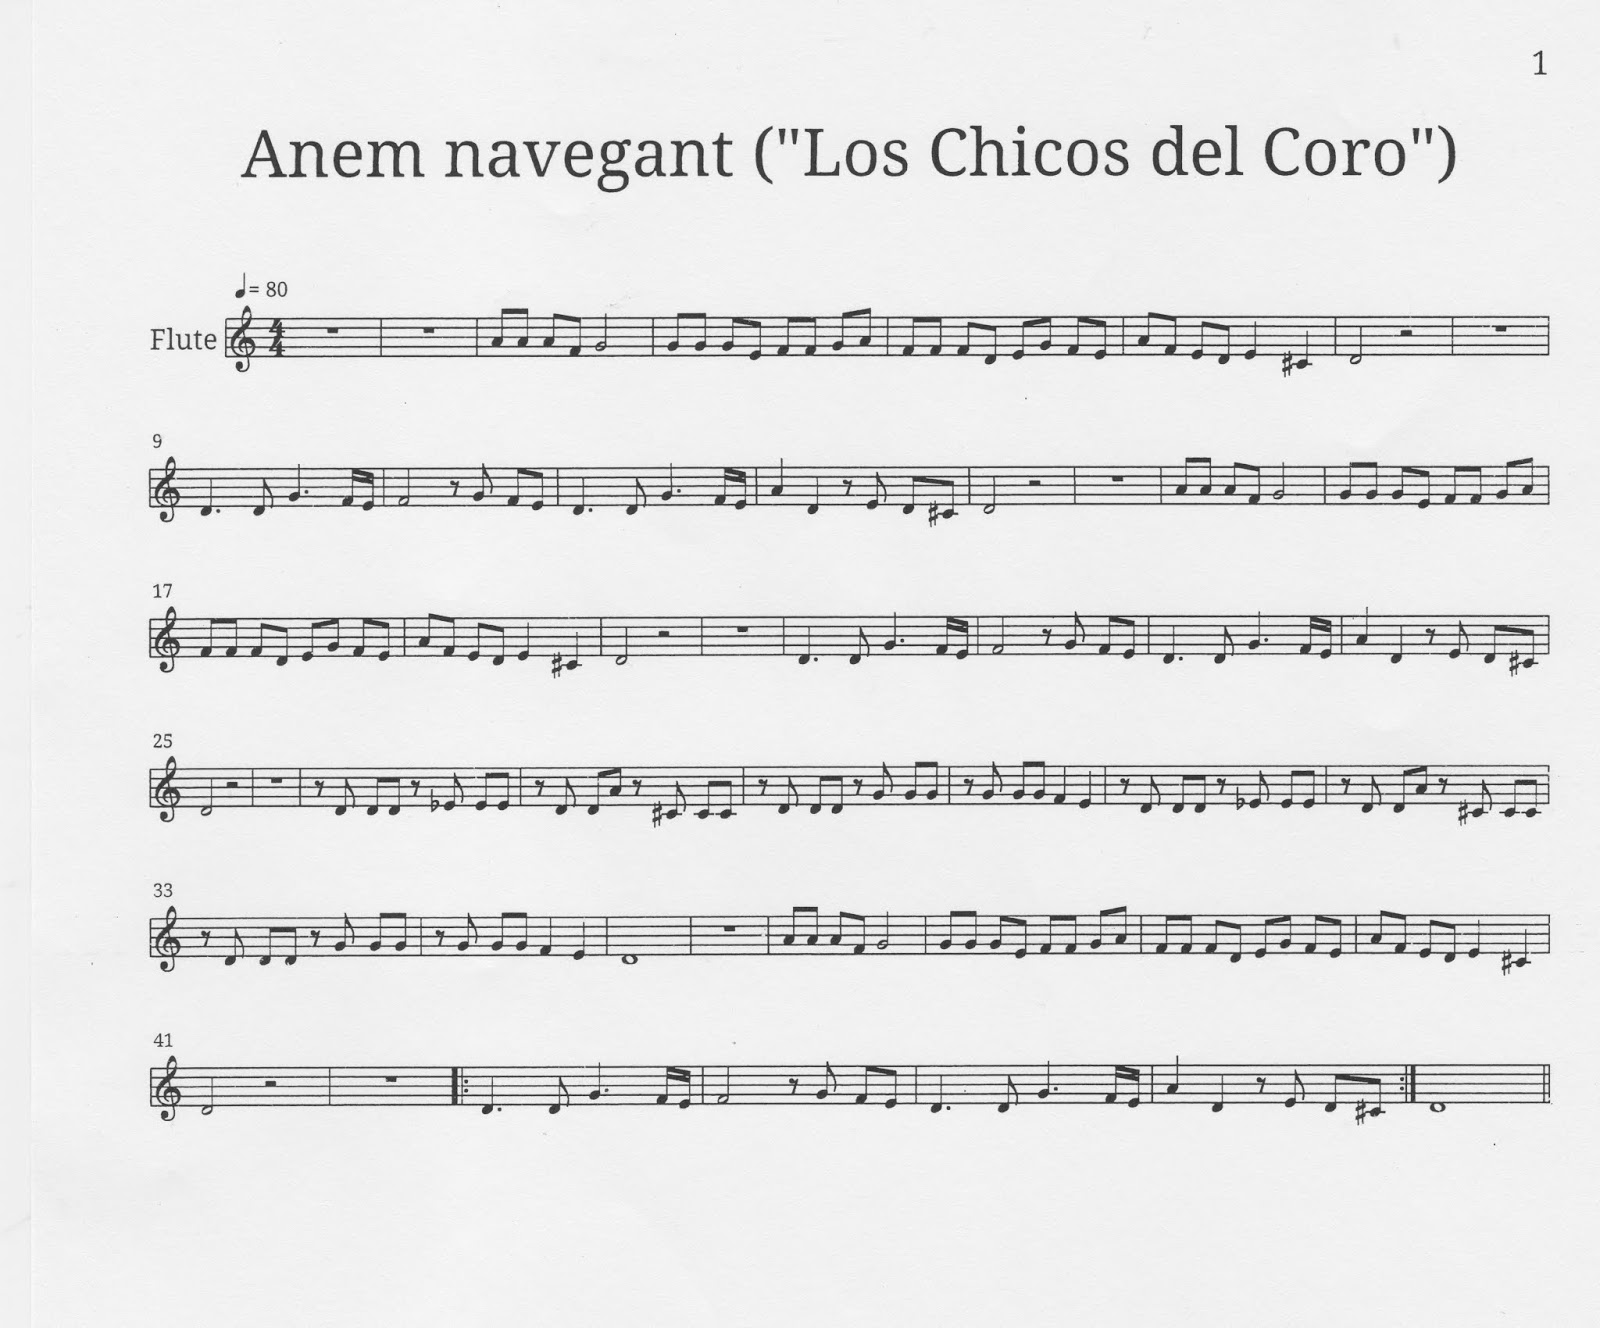 Artesano Ciro imagen El Blog de la Classe de Música: 2019